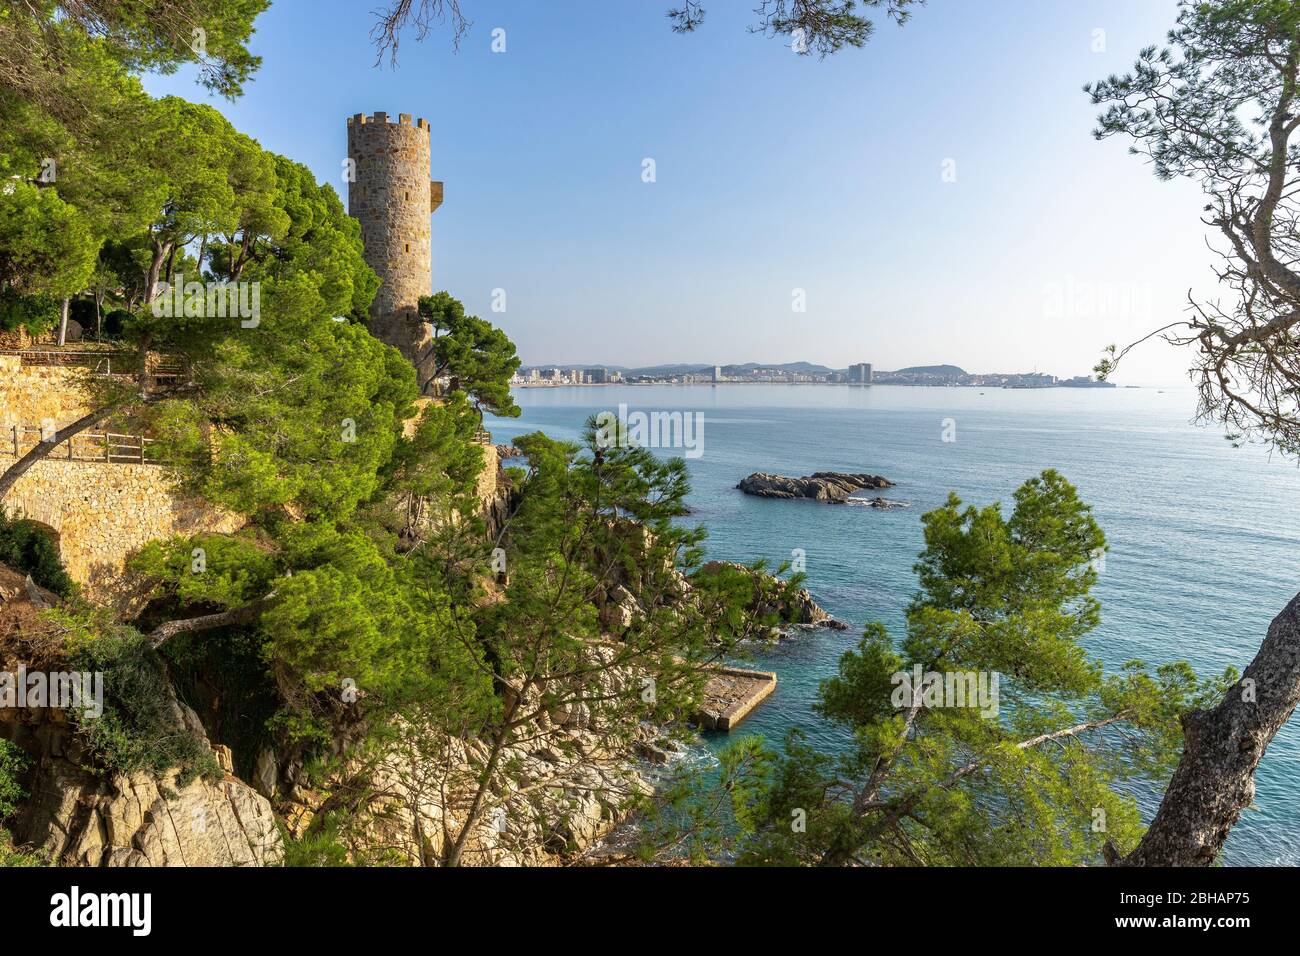 Europa, Spanien, Katalonien, Costa Brava, Blick auf den Wachturm Torre Colomina und die Küstenstadt Palamós im Hintergrund Stockfoto